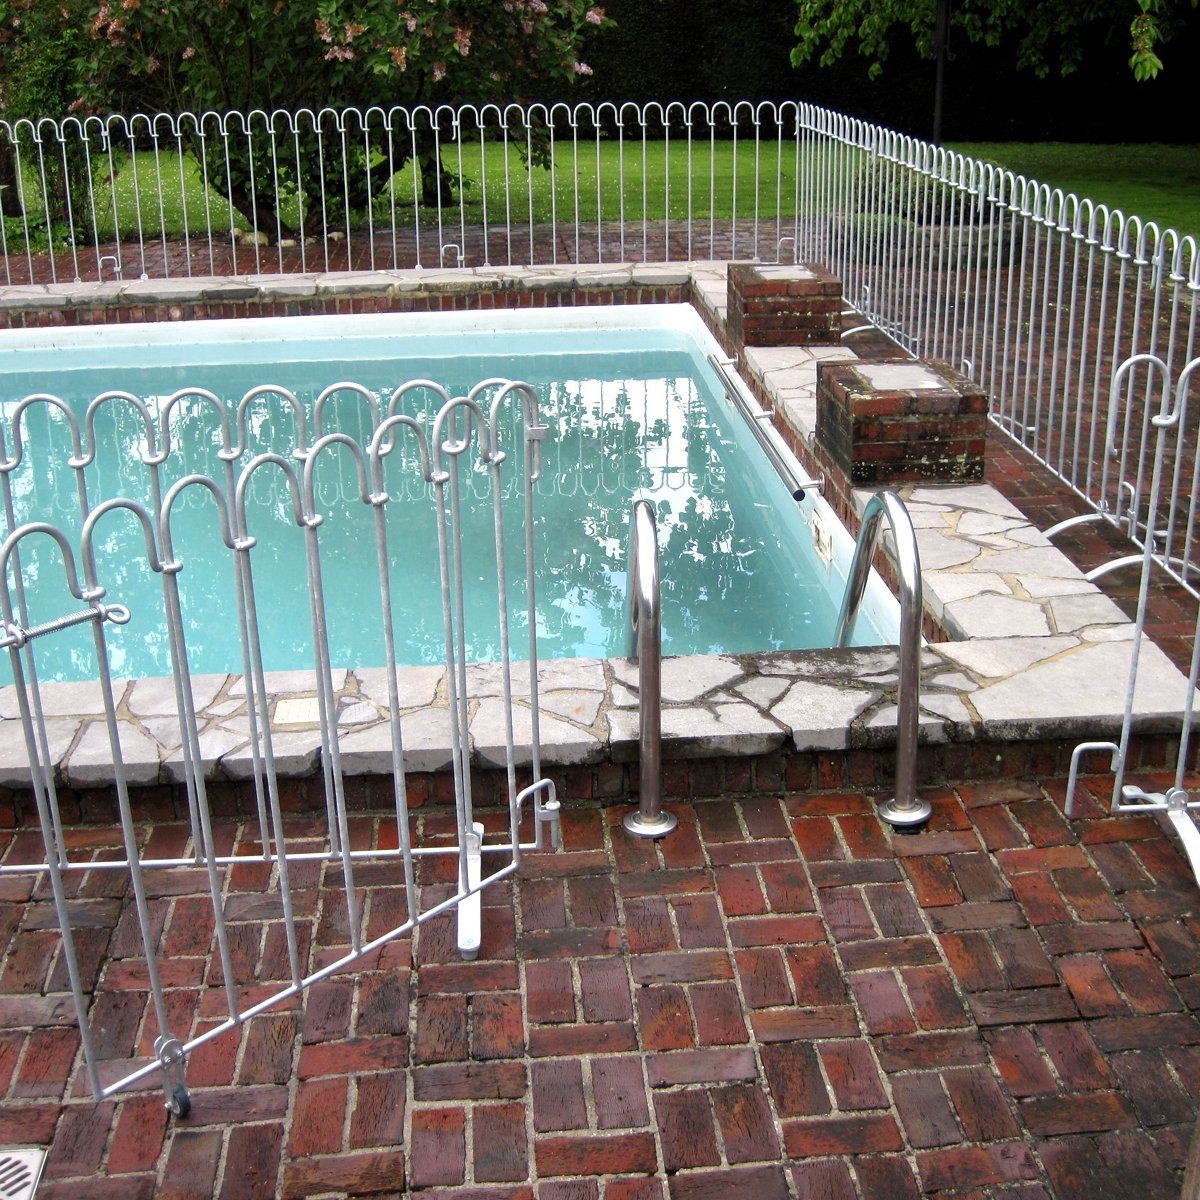 Porte pour barrière de sécurité pour enfants / barrière de piscine